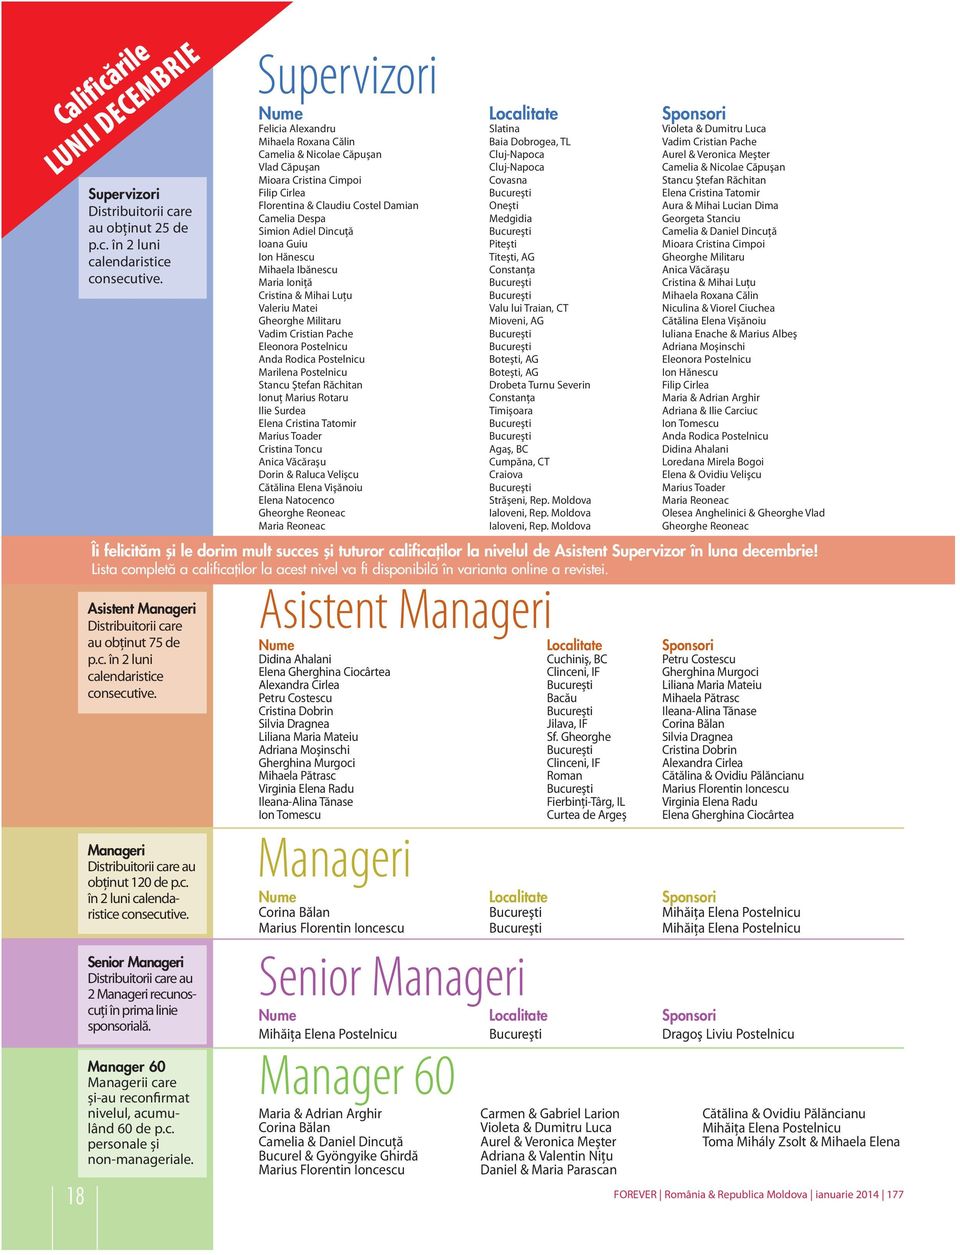 Manager 60 Managerii care și-au reconfirmat nivelul, acumulând 60 de p.c. personale și non-manageriale.